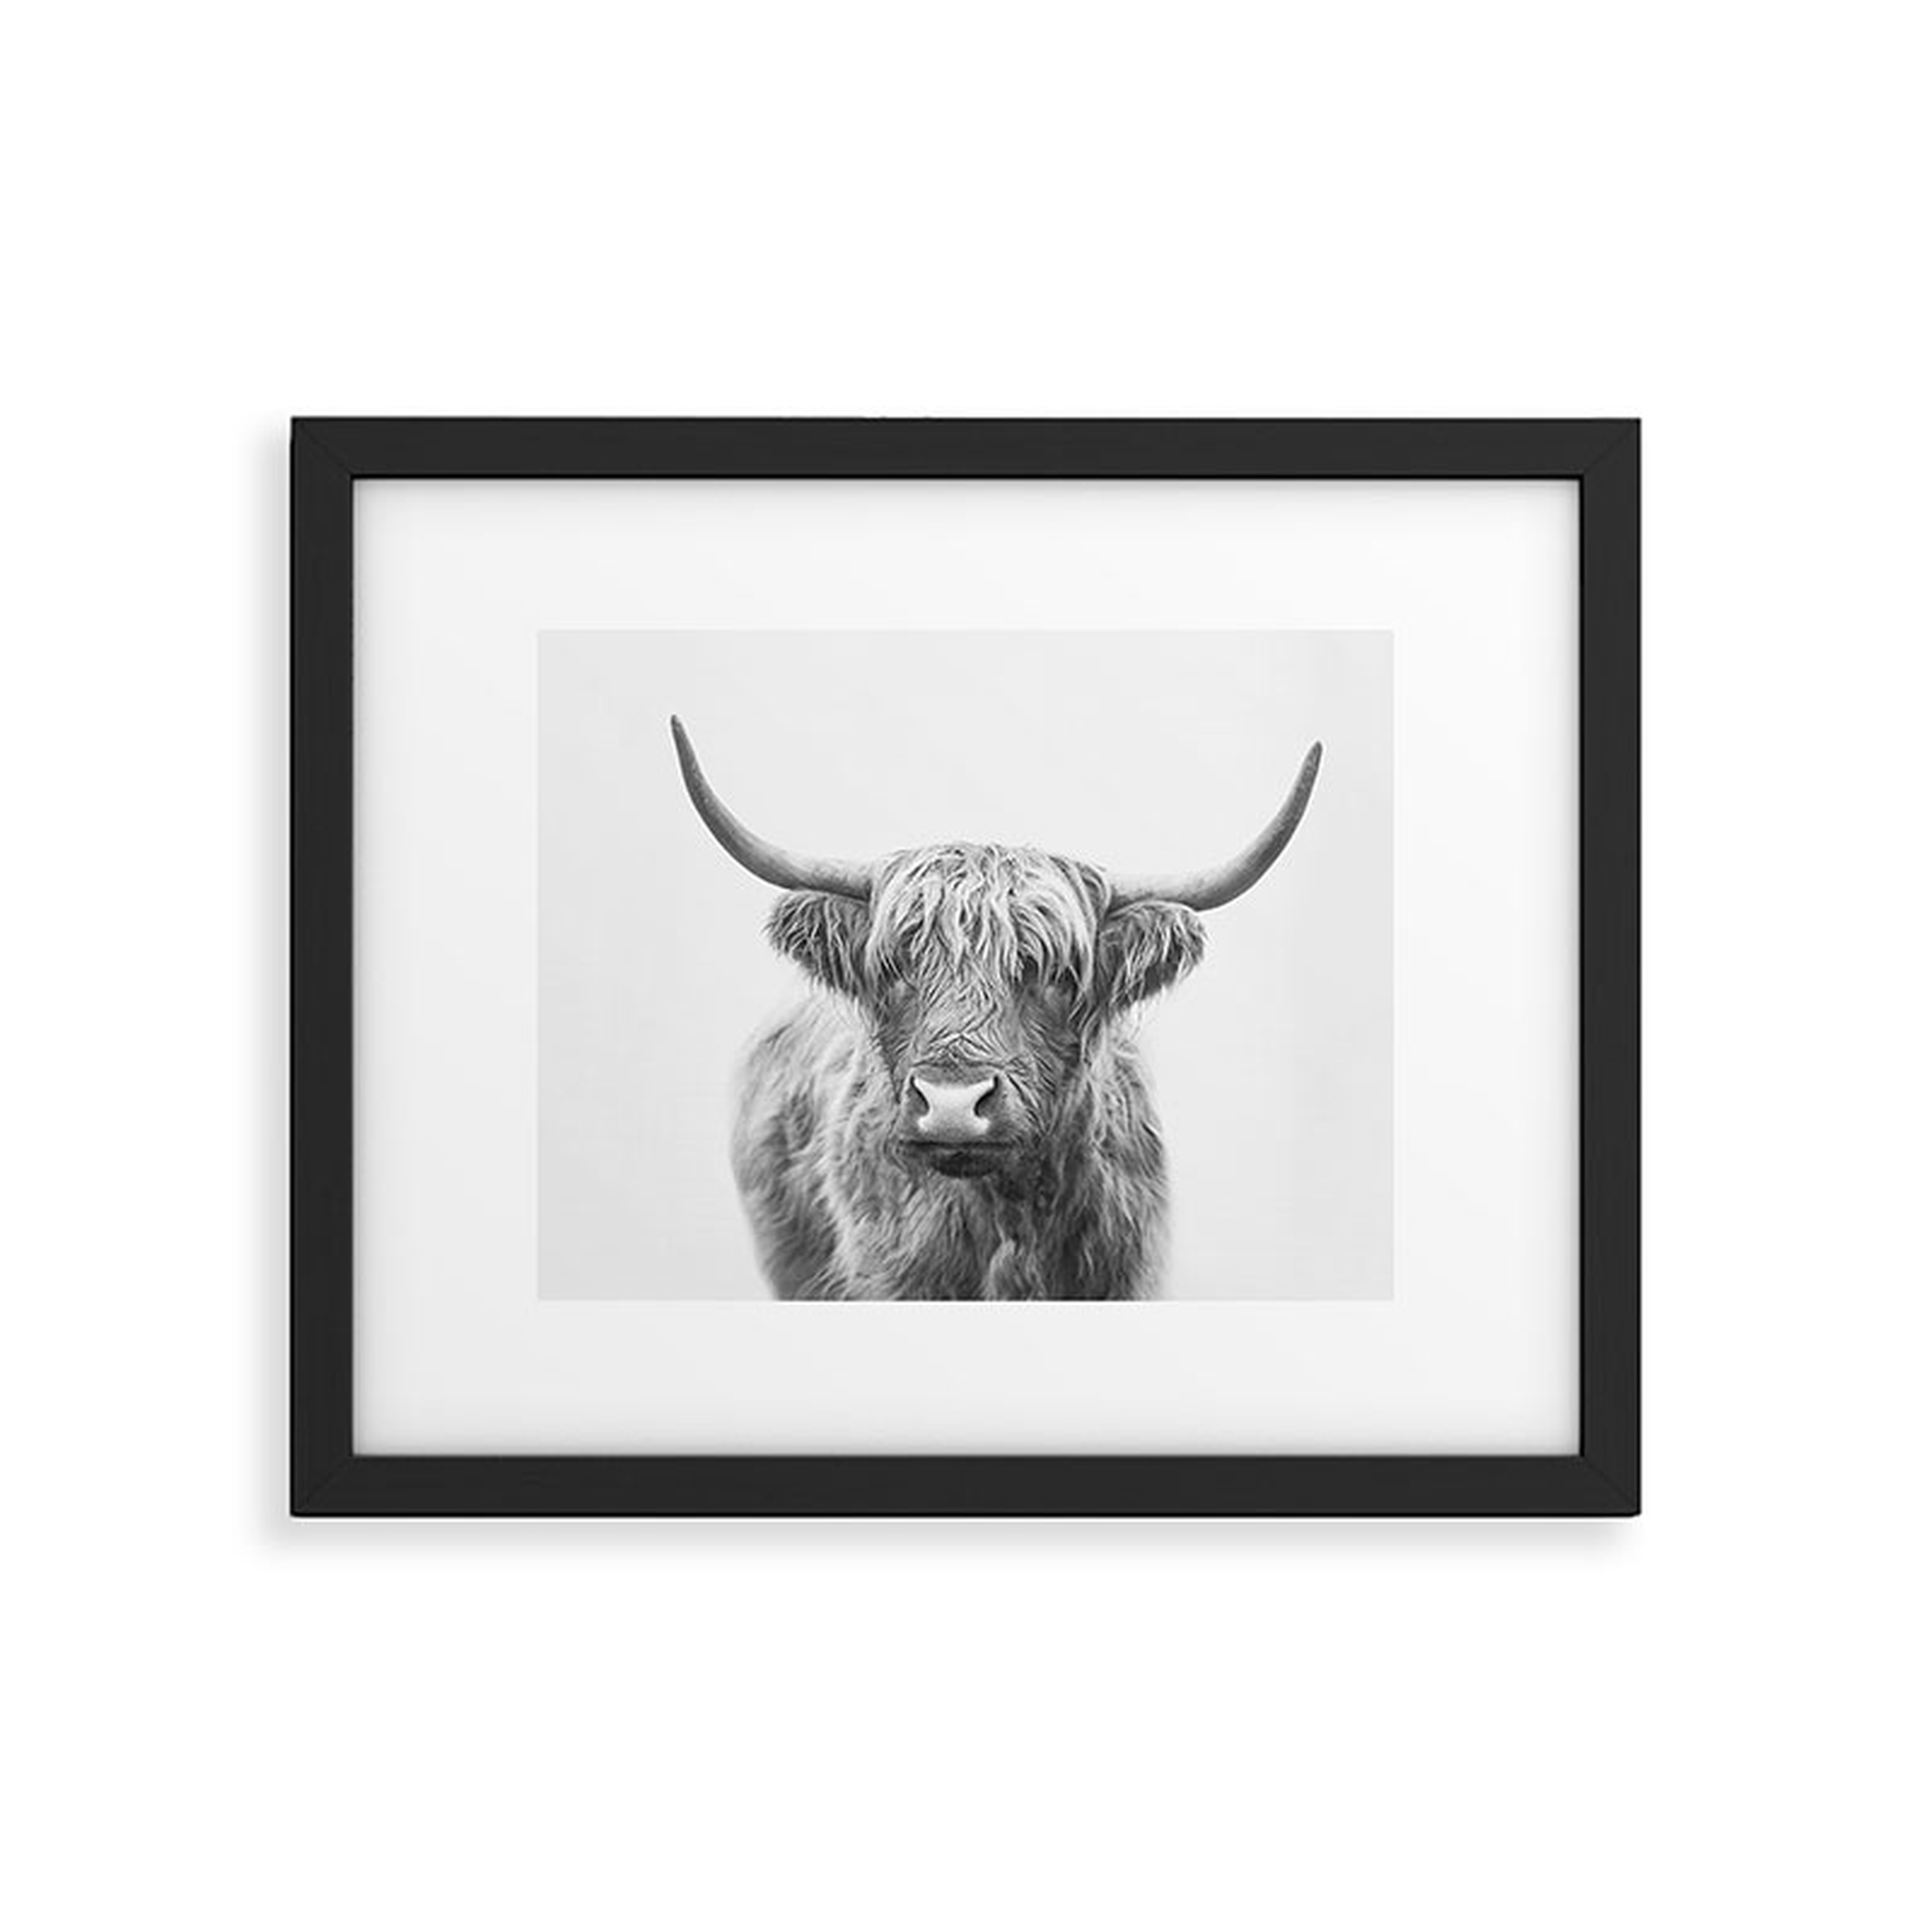 Highland Bull by Sisi and Seb - Framed Art Print Modern Black 11" x 14" - Wander Print Co.